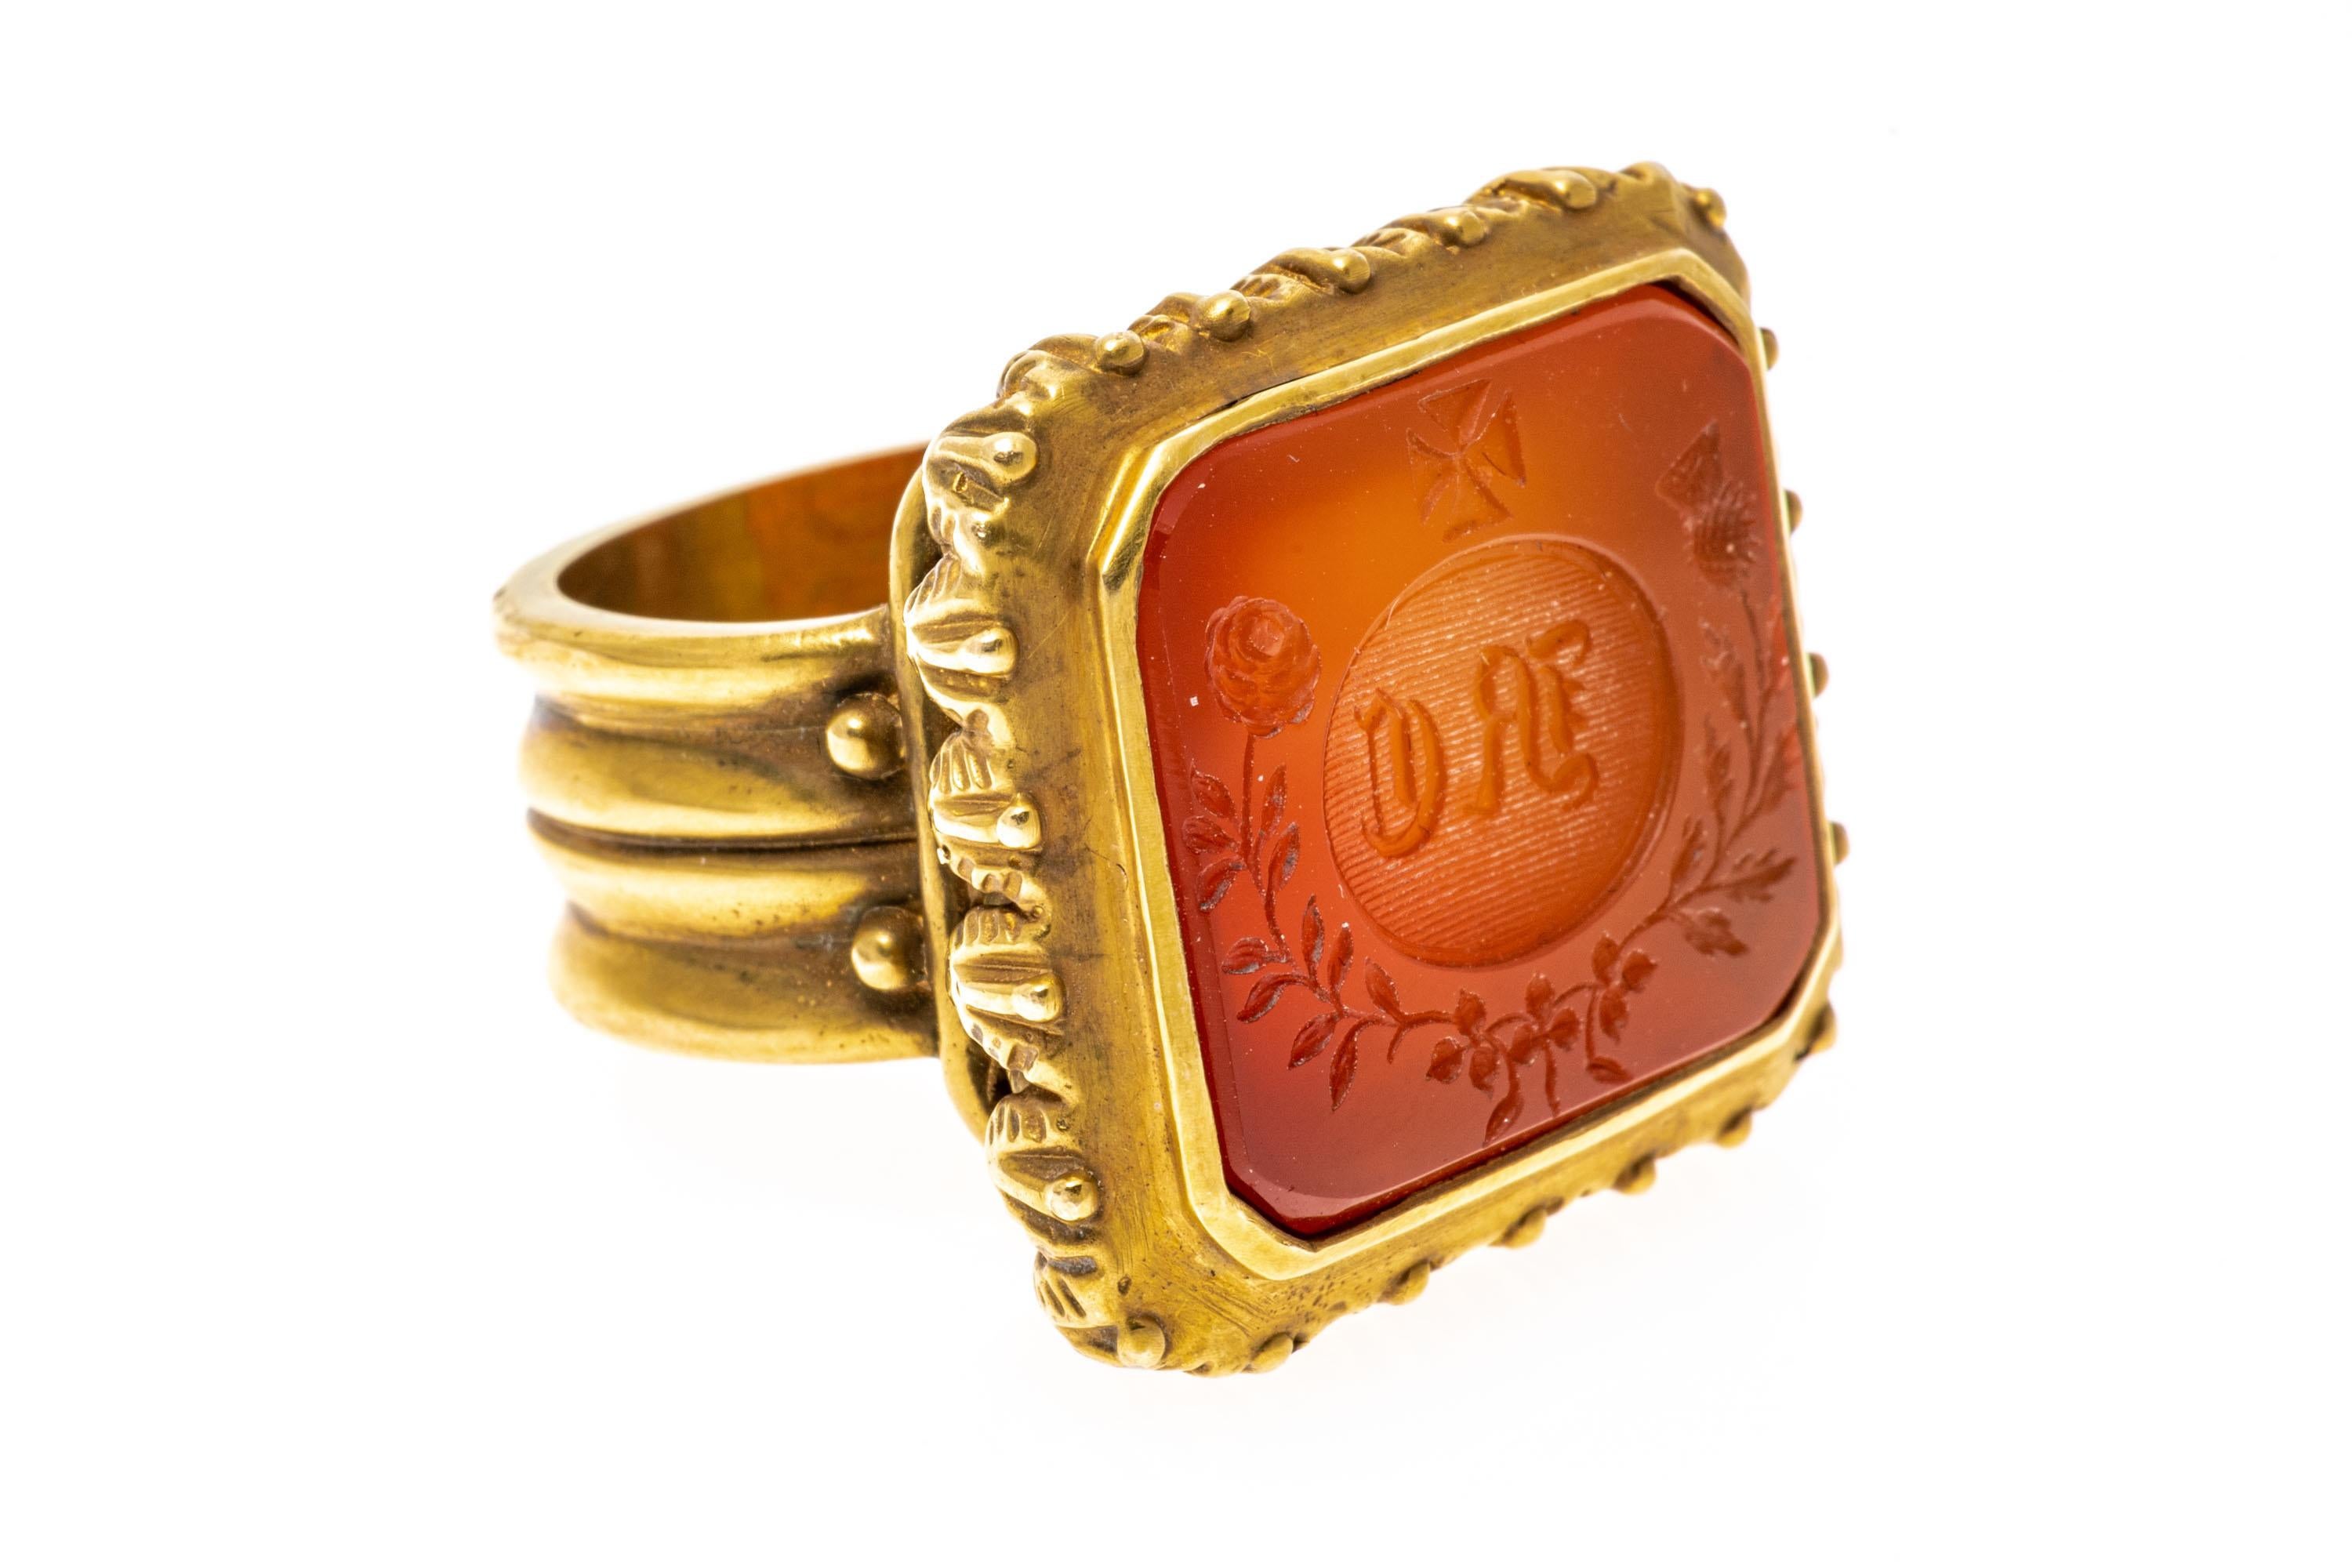 Ring aus 14k Gelbgold. Dieser erstaunliche, klobige, rechteckige, zeitgenössische Wachssiegel-Stempelring zeigt ein Karneol-Intaglio, das mit alten englischen Initialen, einem Malteserkreuz, einer Rose und einer Distel graviert ist. Der Ring ist